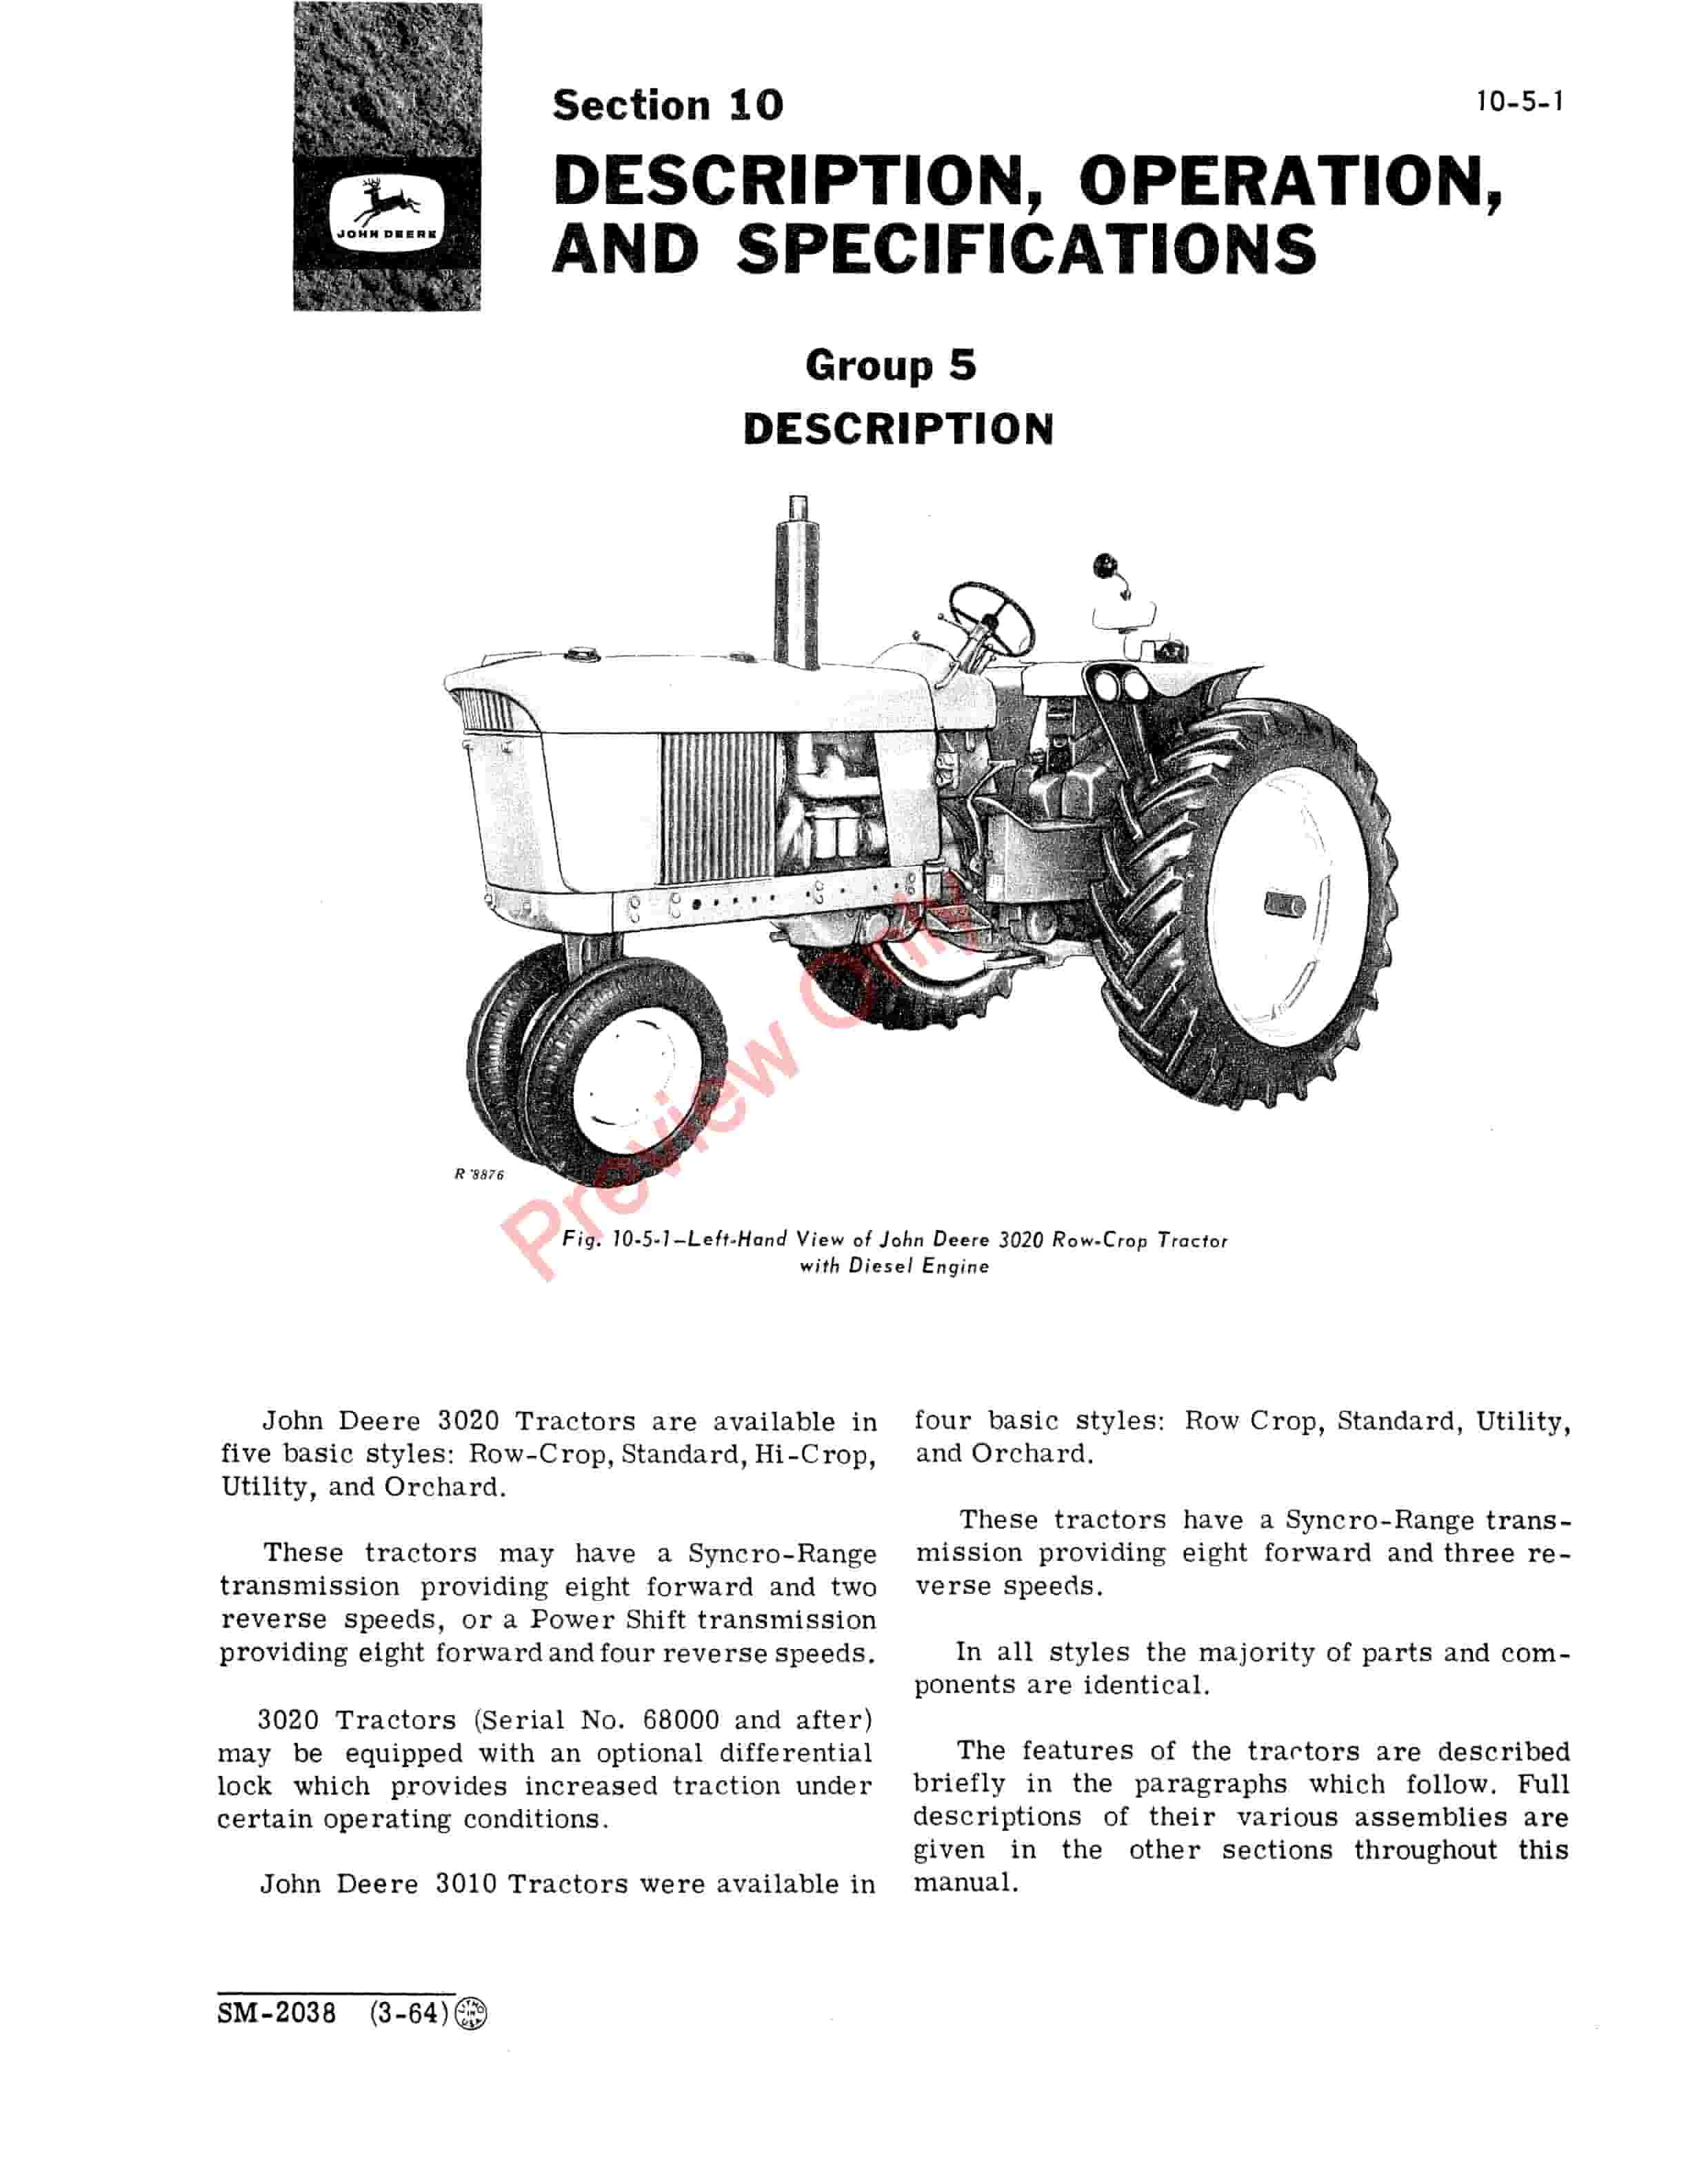 John Deere 3000 Series Tractors Service Manual SM2038 01MAR67 5